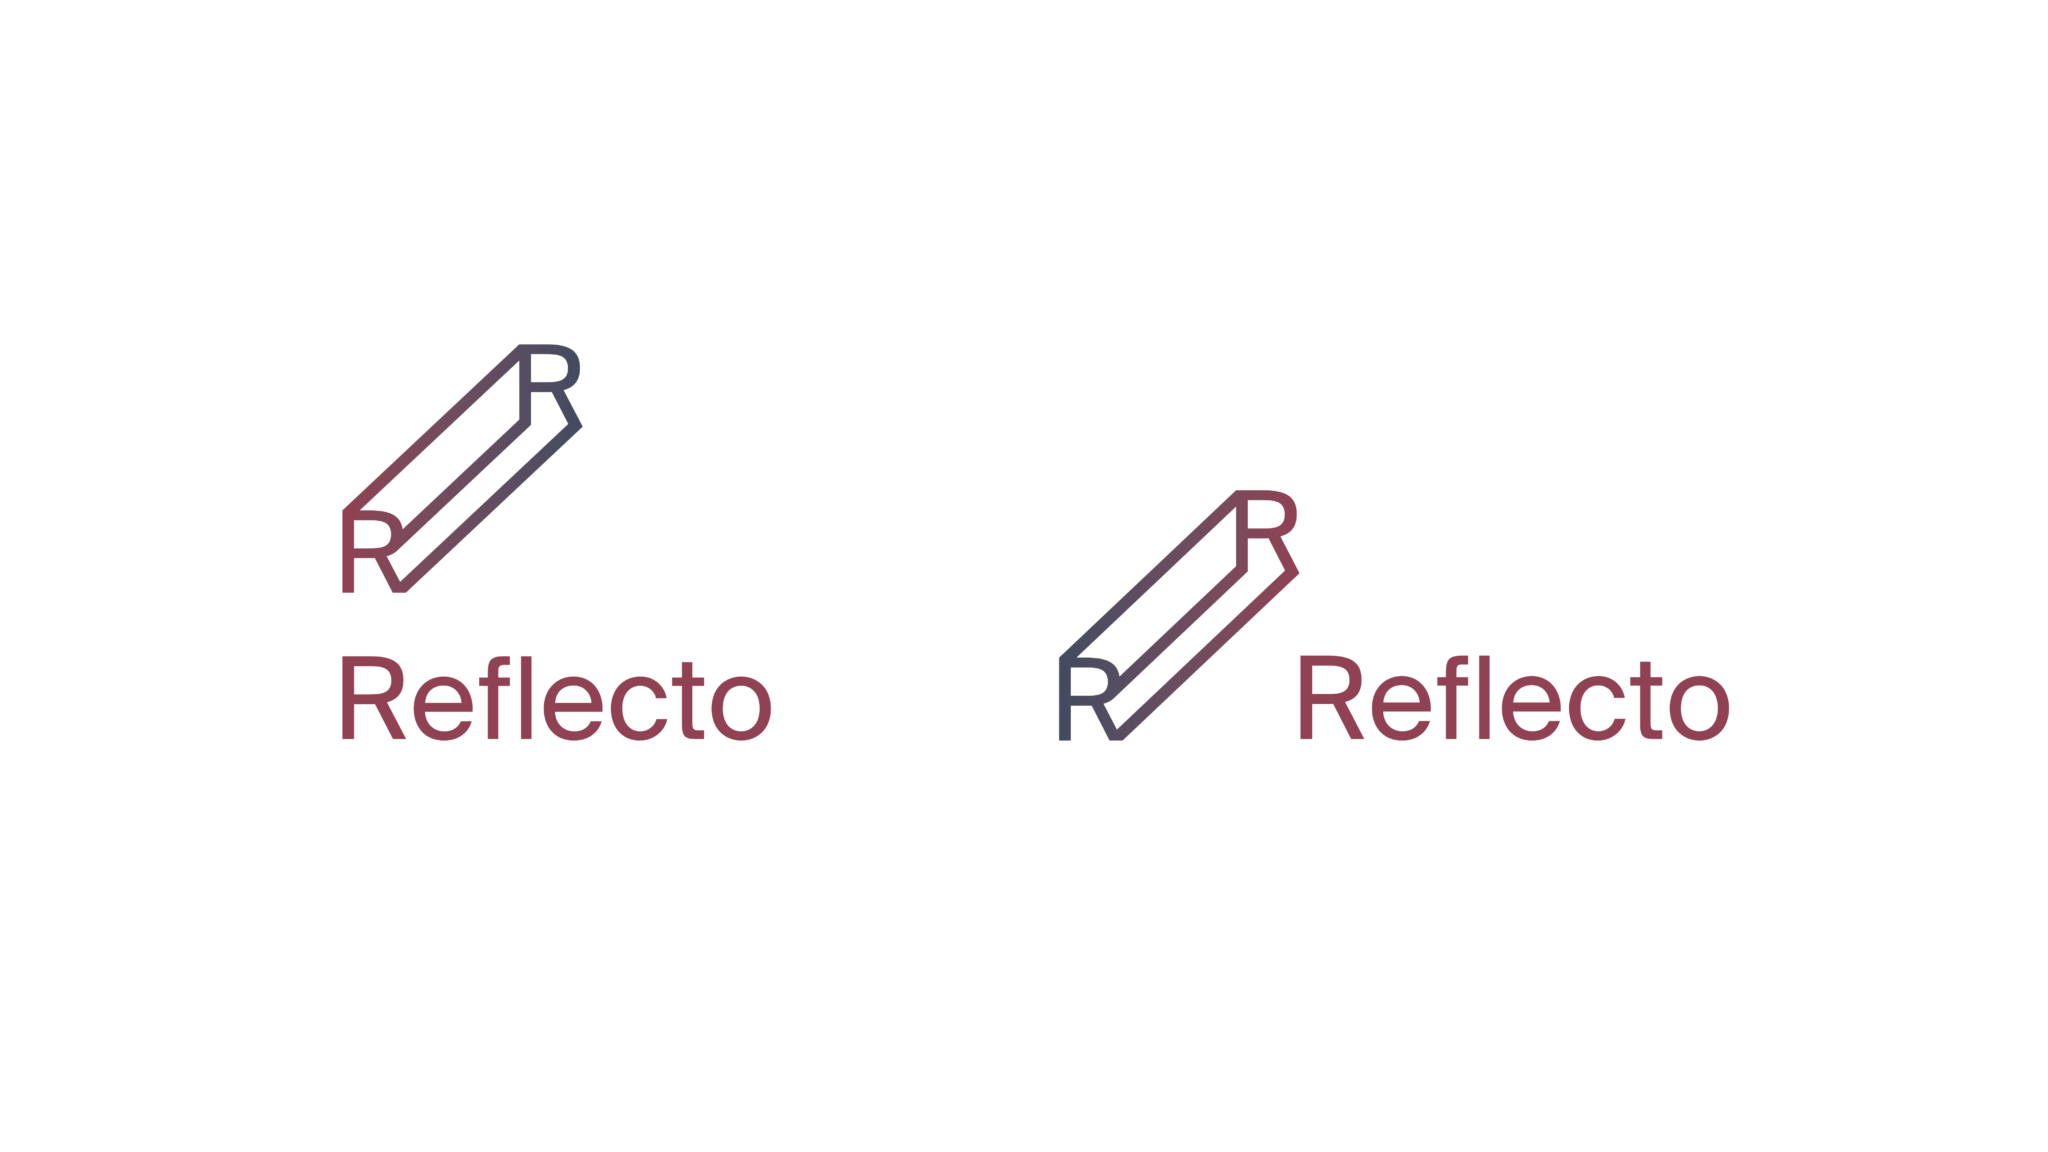 Reflecto logoer, stående og liggende variant